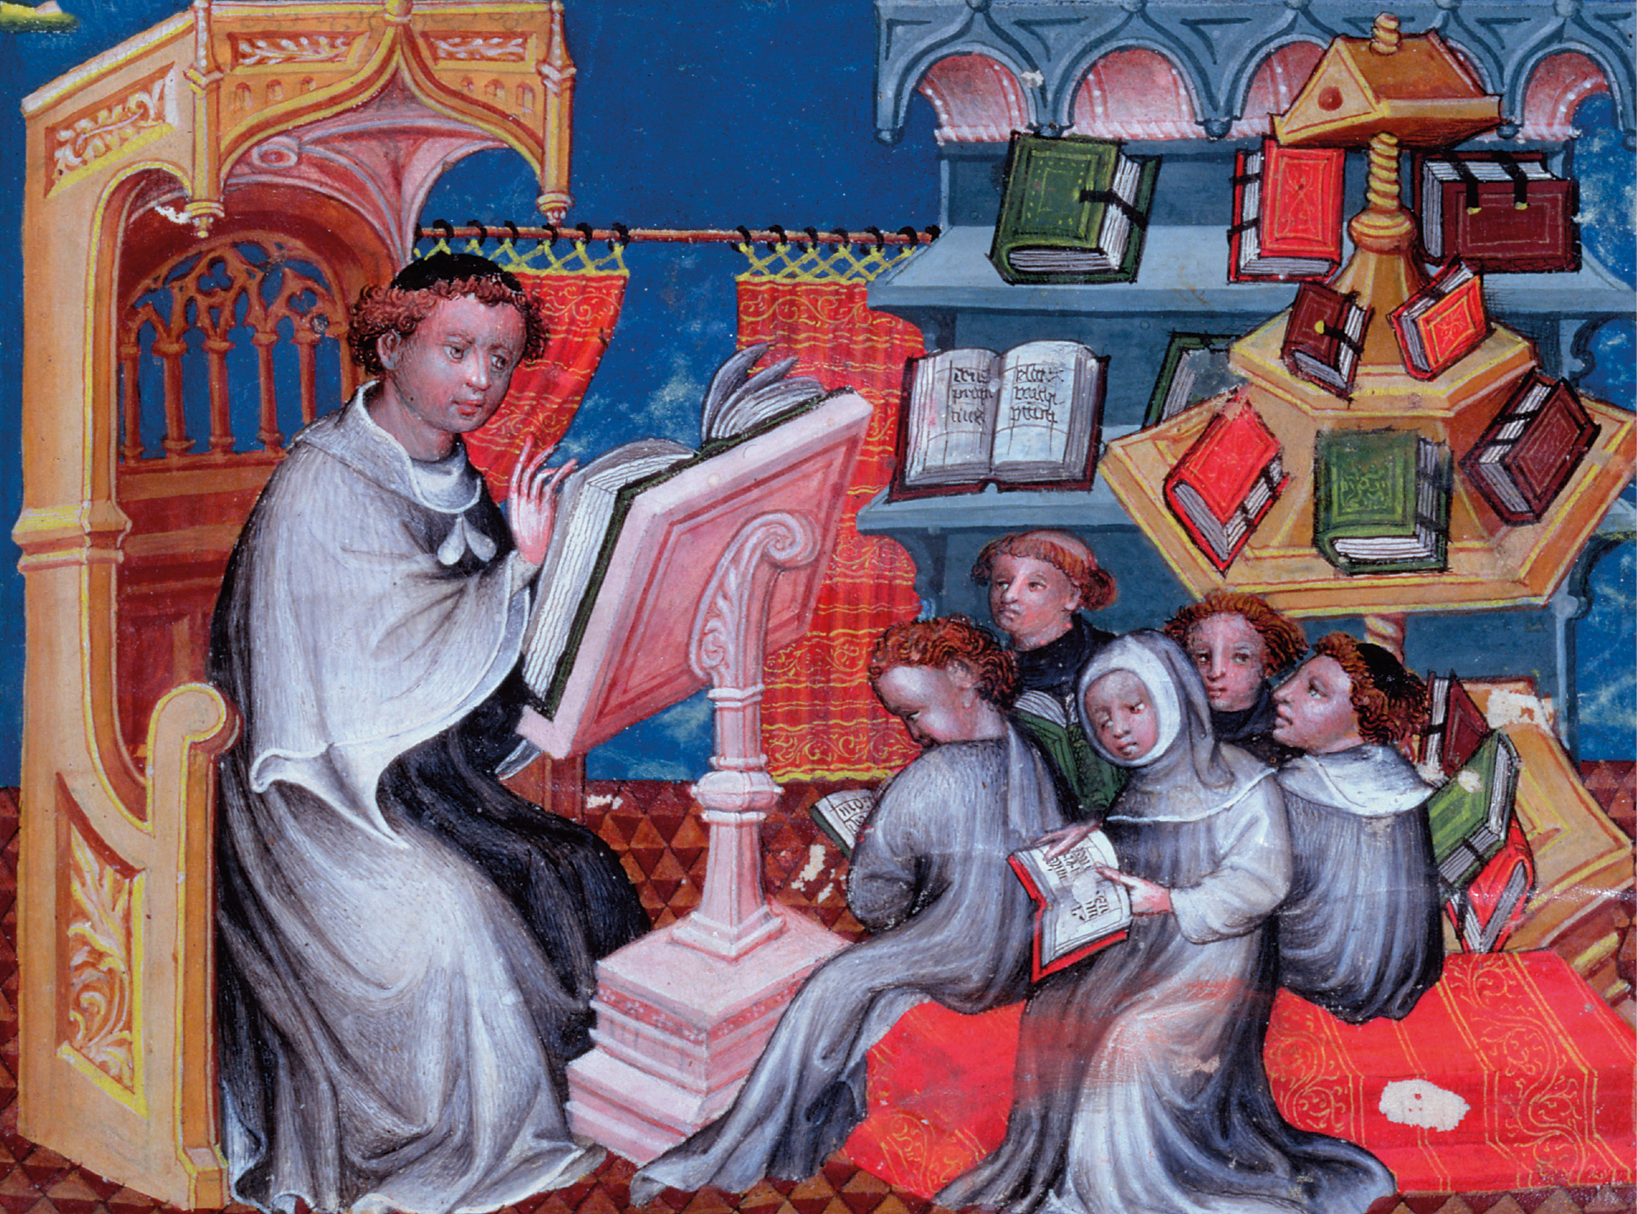 Iluminura. À esquerda, homem de vestes largas, está sentado em uma cadeira à frente de um grande livro aberto. Próximo a ele, sentadas à direita, crianças com livros nas mãos. Ao fundo, estantes com livros.